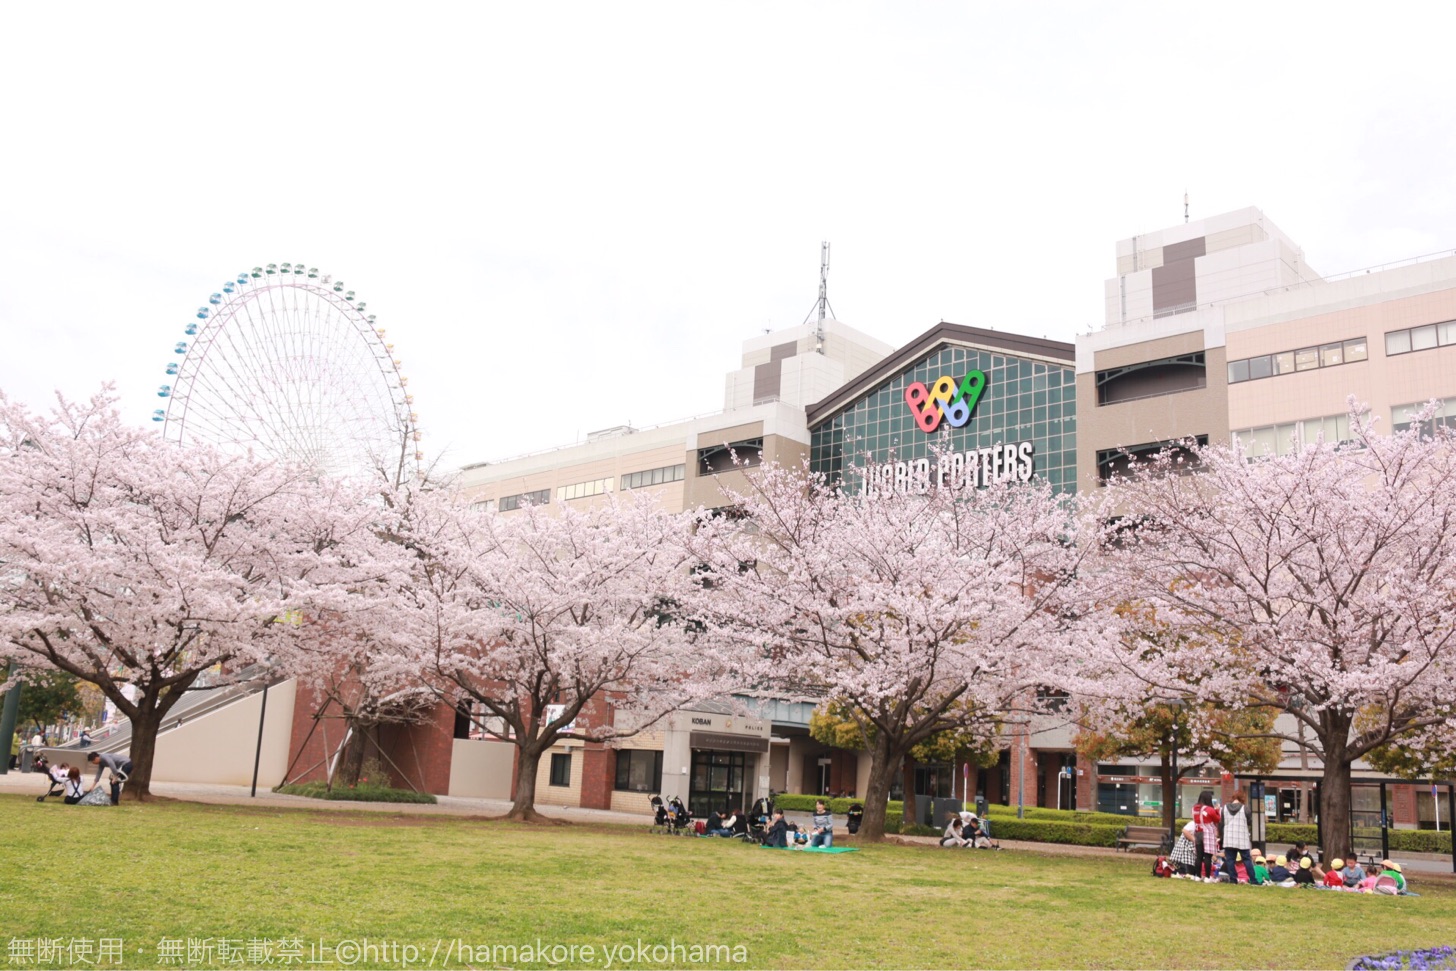 横浜ワールドポーターズの前の広場でお花見